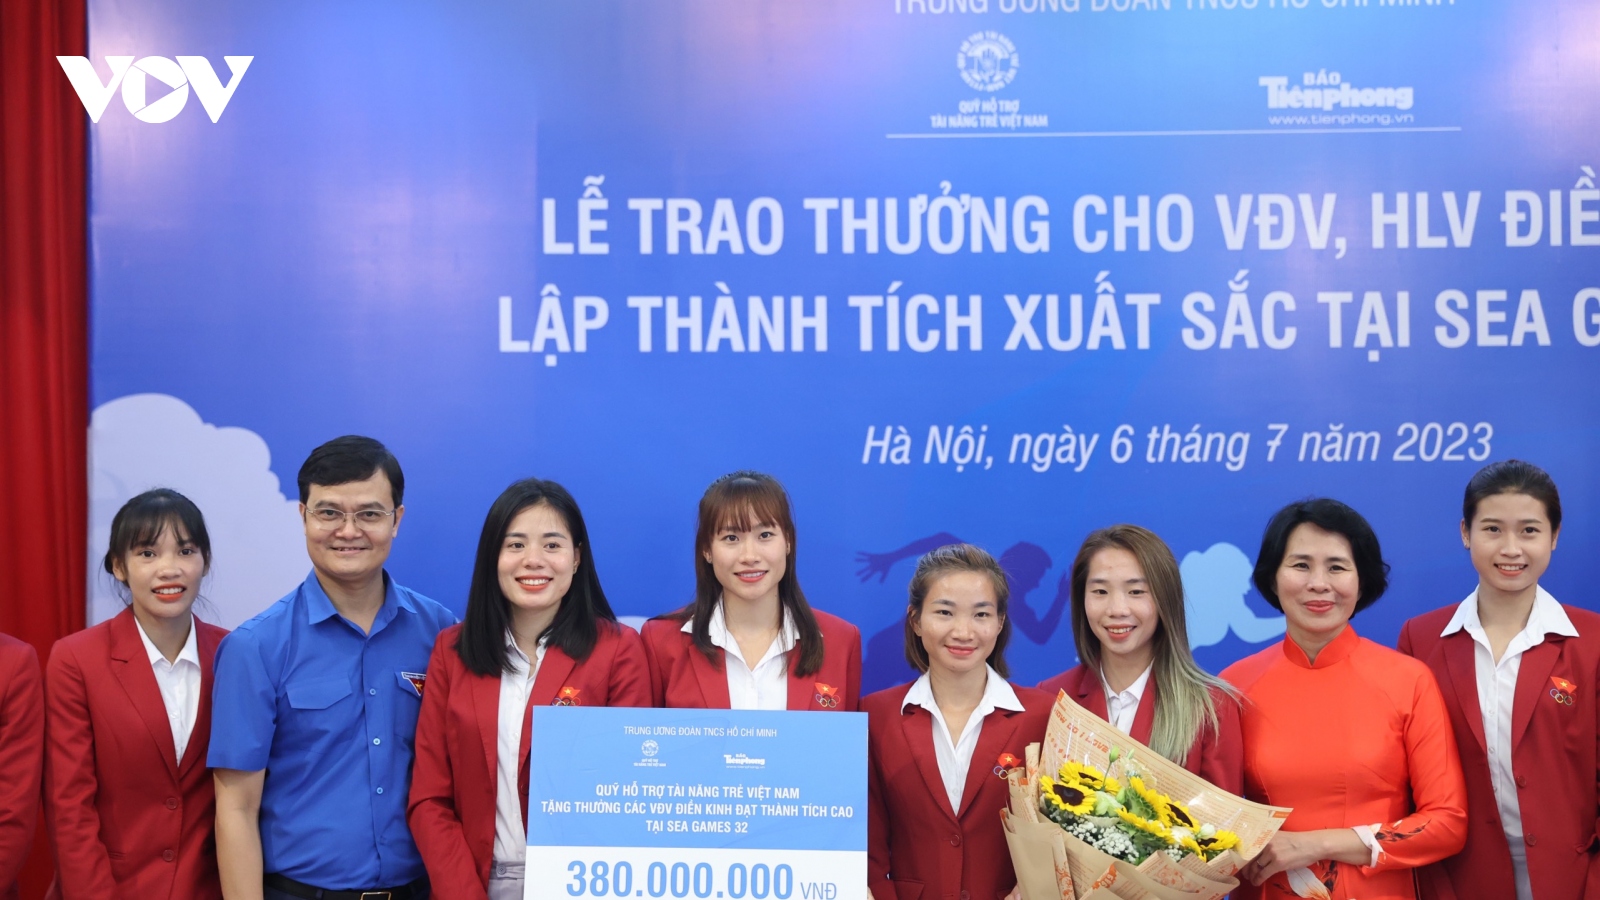 Nữ hoàng điền kinh Nguyễn Thị Oanh cùng đồng đội nhận thưởng 380 triệu đồng